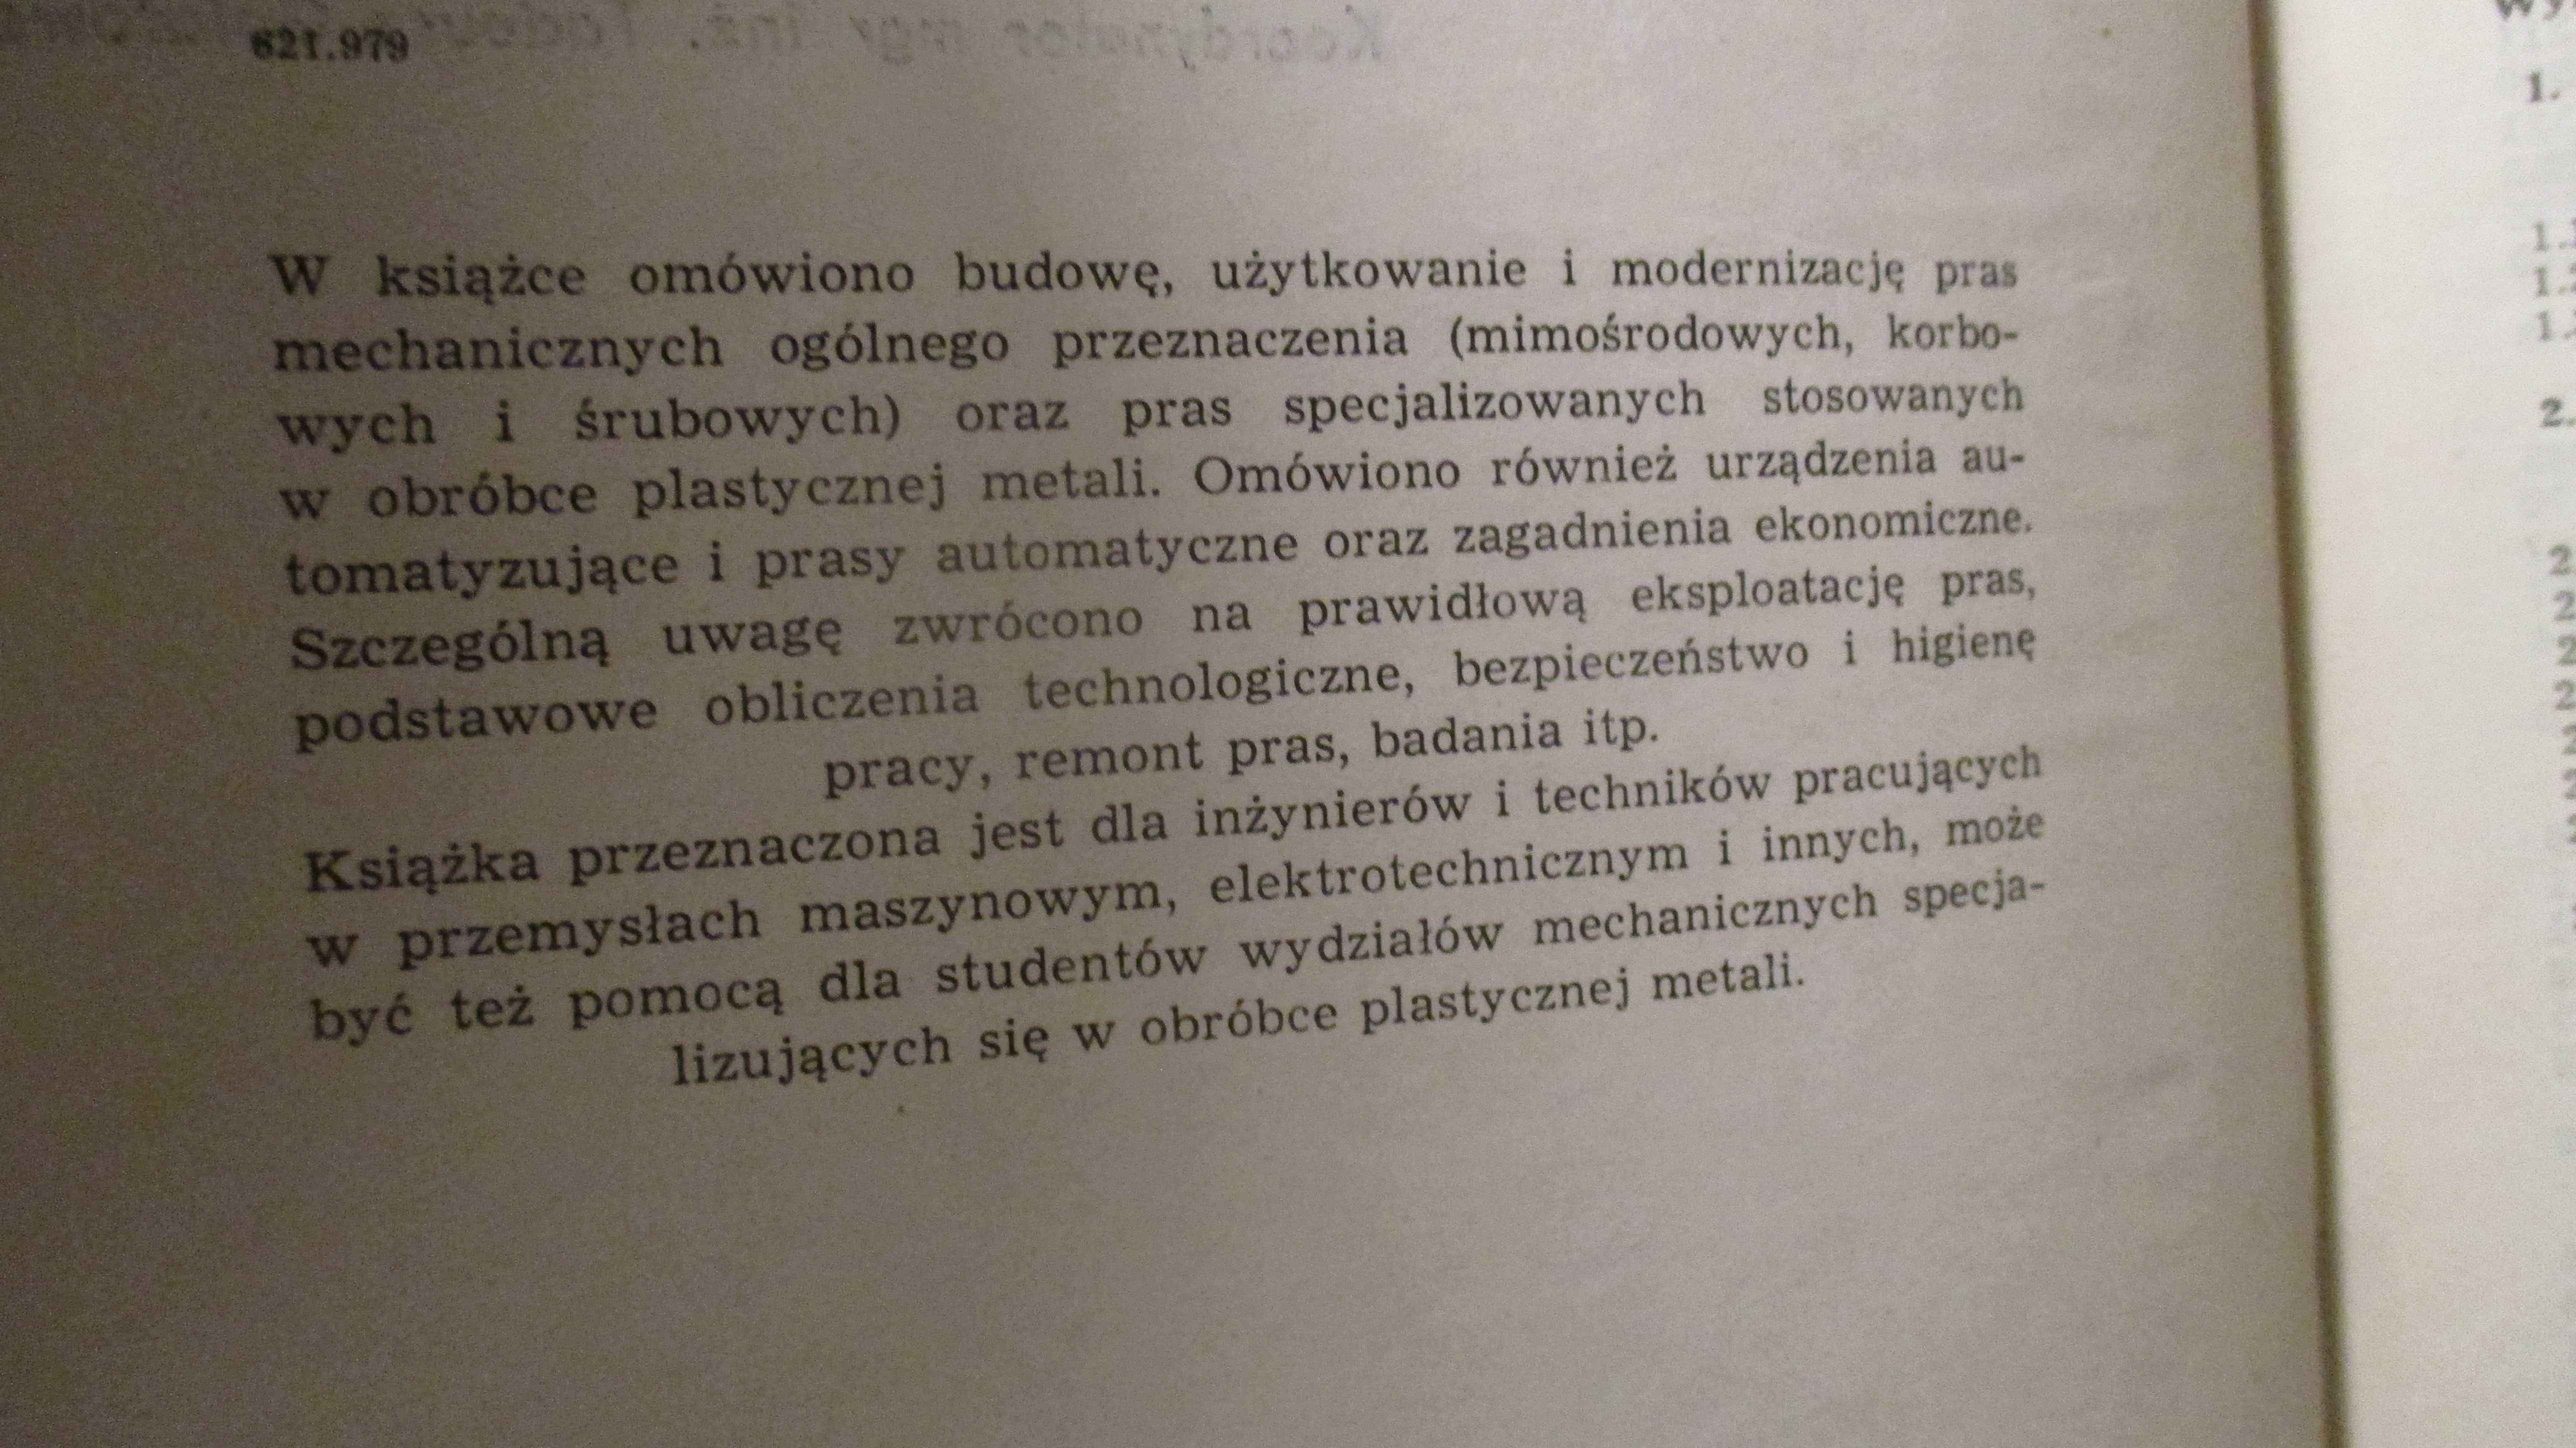 Prasy mechaniczne - Golatowski / prasy / mechanika / maszyny